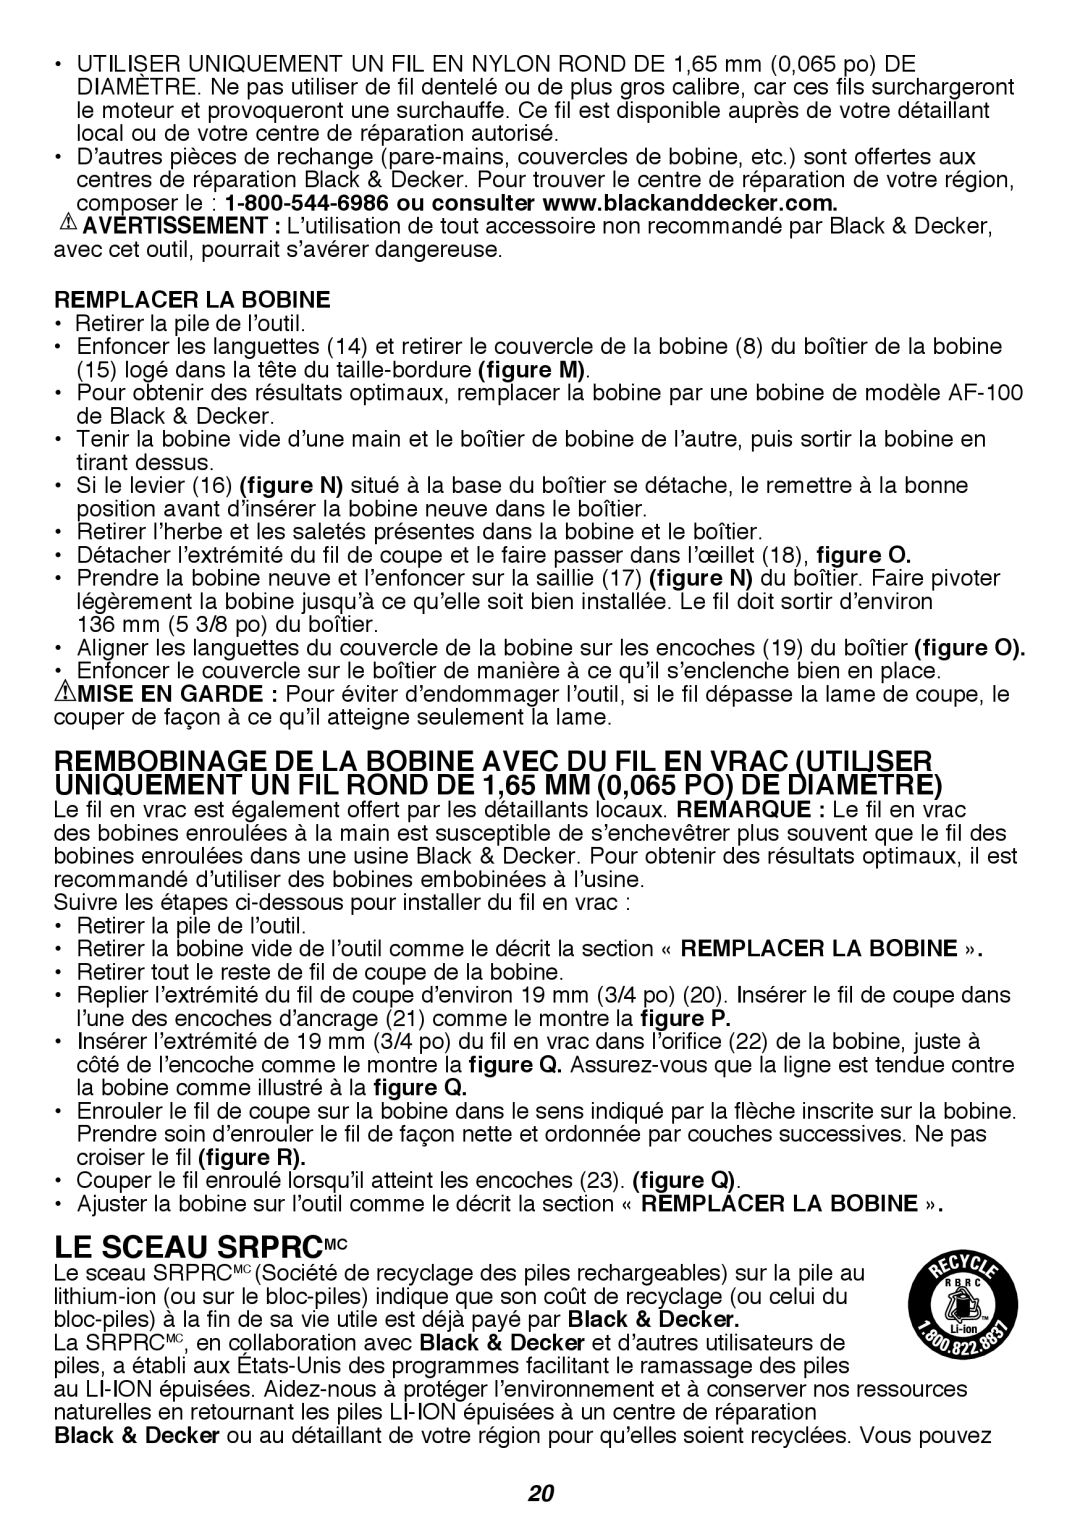 Black & Decker LST300R instruction manual Le sceau SRPRCMC, Remplacer La Bobine 